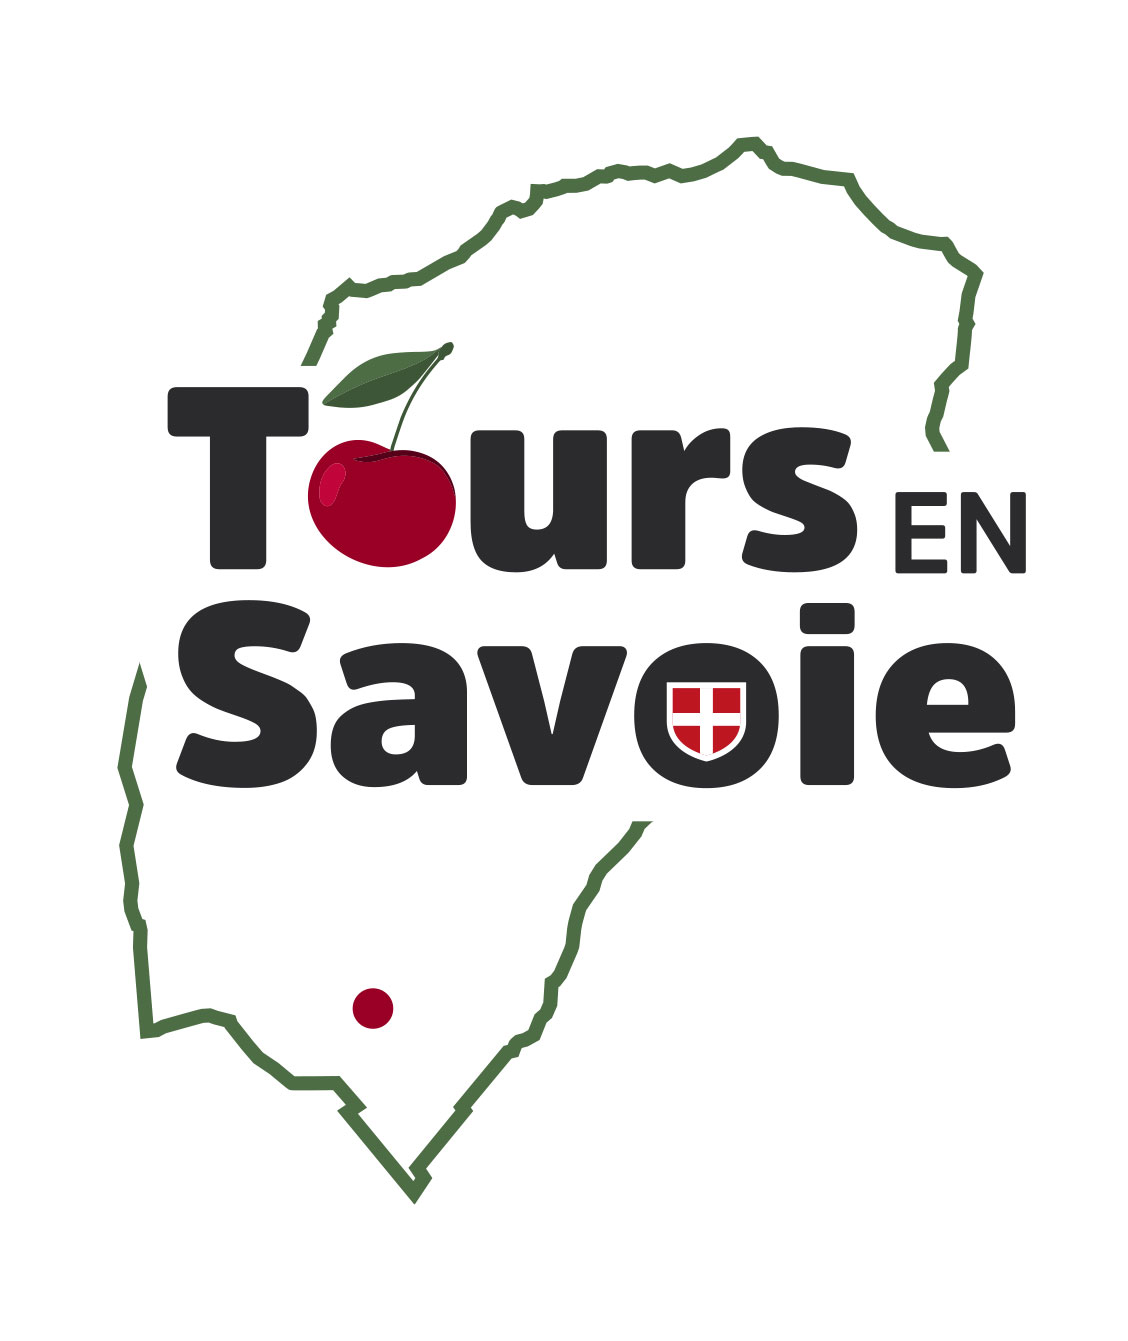 Tours en Savoie